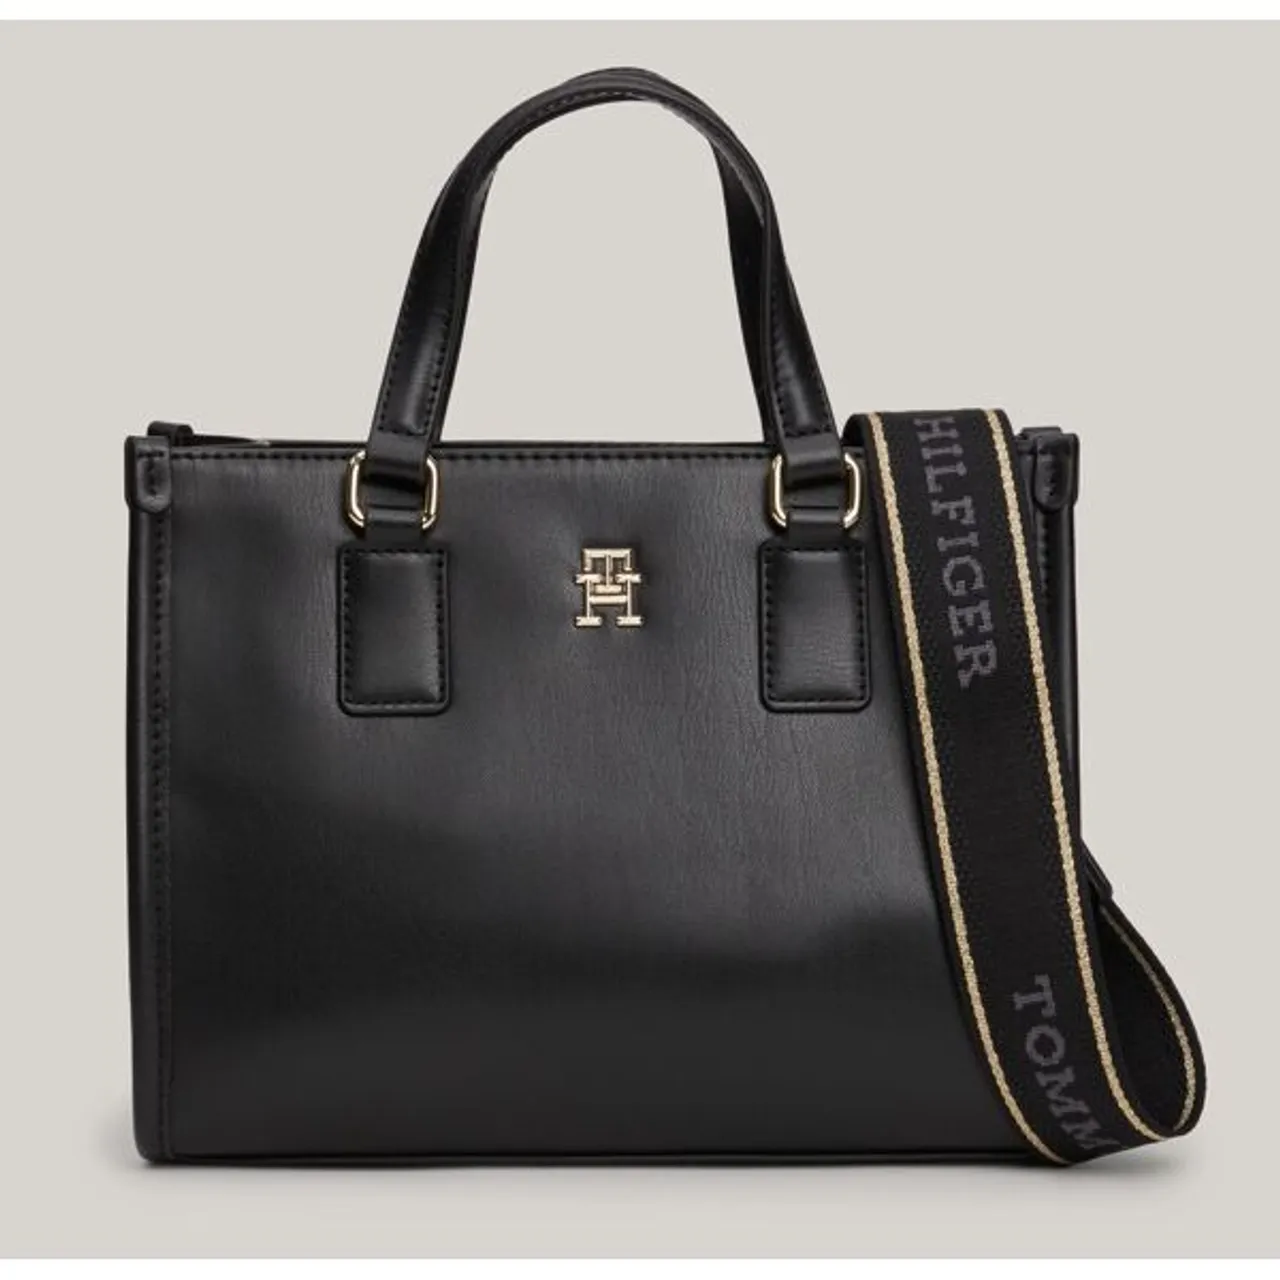 Mini Bag TOMMY HILFIGER "TH MONOTYPE MINI TOTE" Gr. B/H/T: 24,5 cm x 19 cm x 11 cm, schwarz (black) Damen Taschen Handtaschen